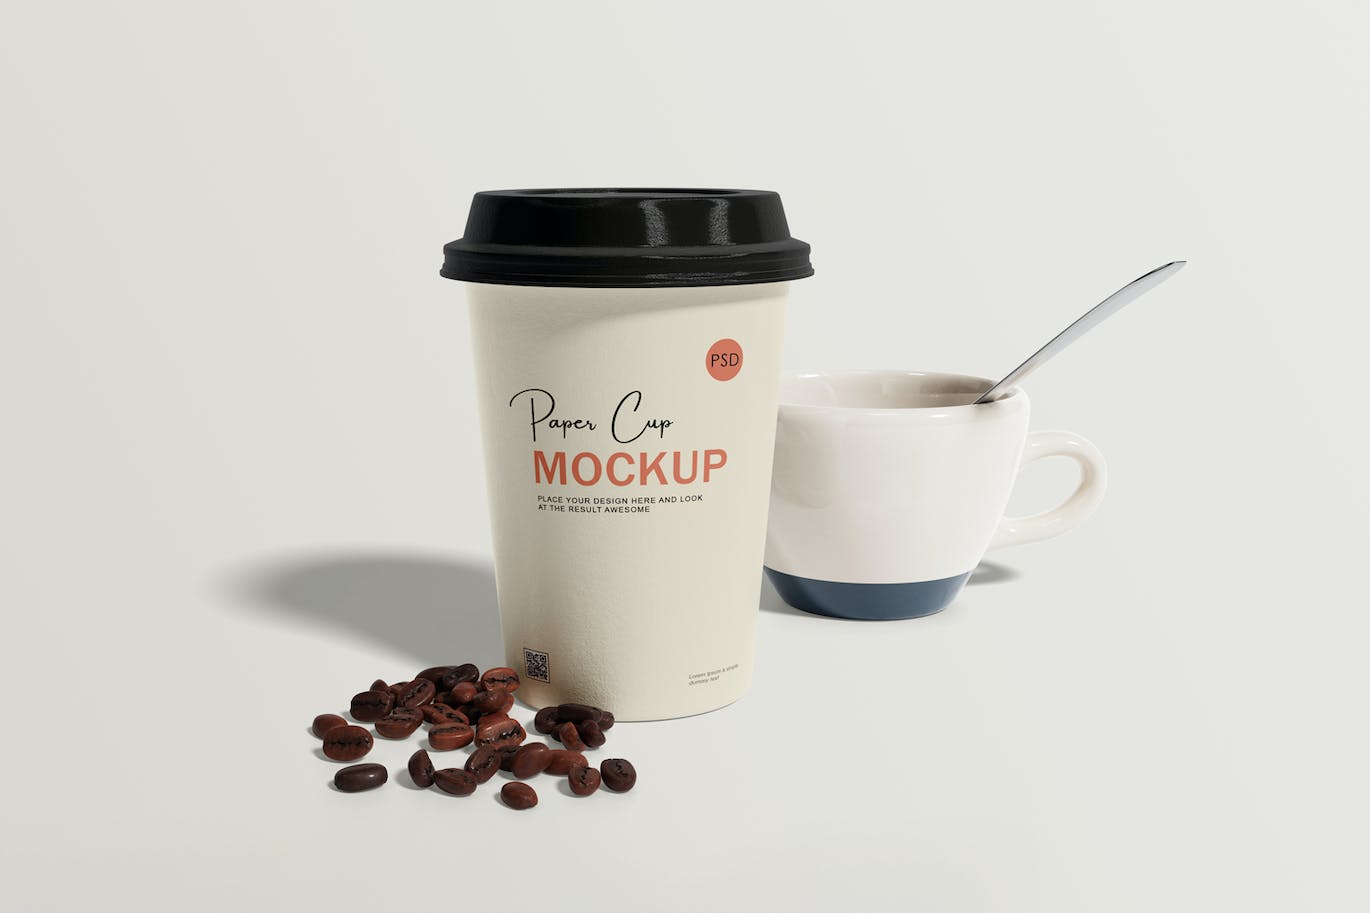 咖啡机咖啡杯包装设计样机 Coffee cup mockup with coffee machine 样机素材 第2张